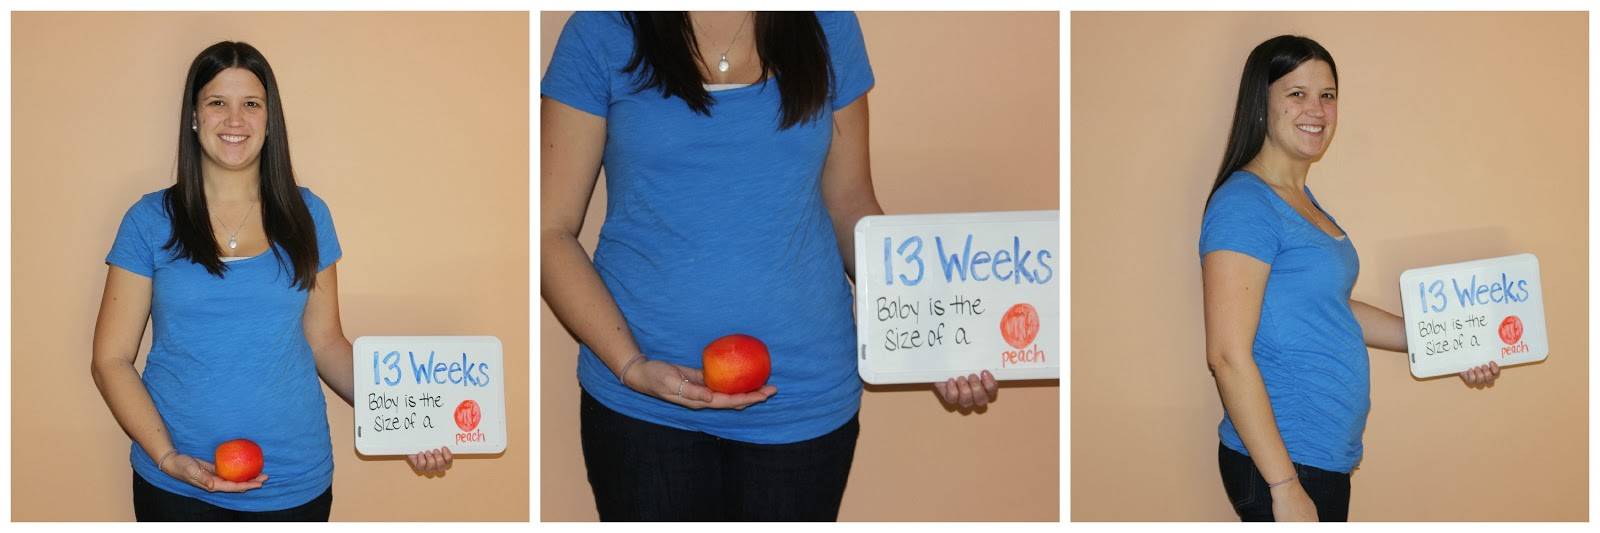 13 неделя беременности: что происходит на этой неделе?